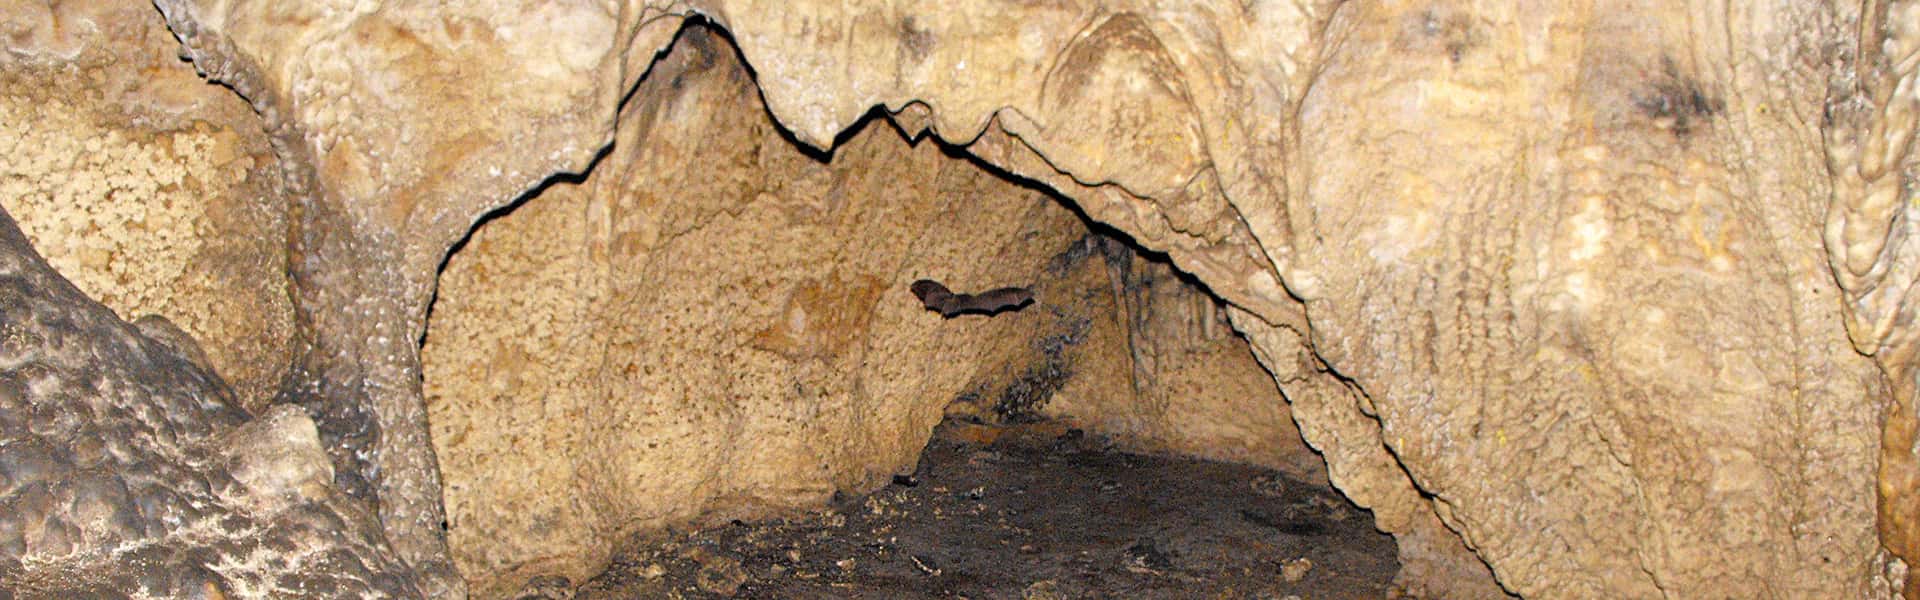 Σπήλαιο Δρακότρυπα (Παναγιά)